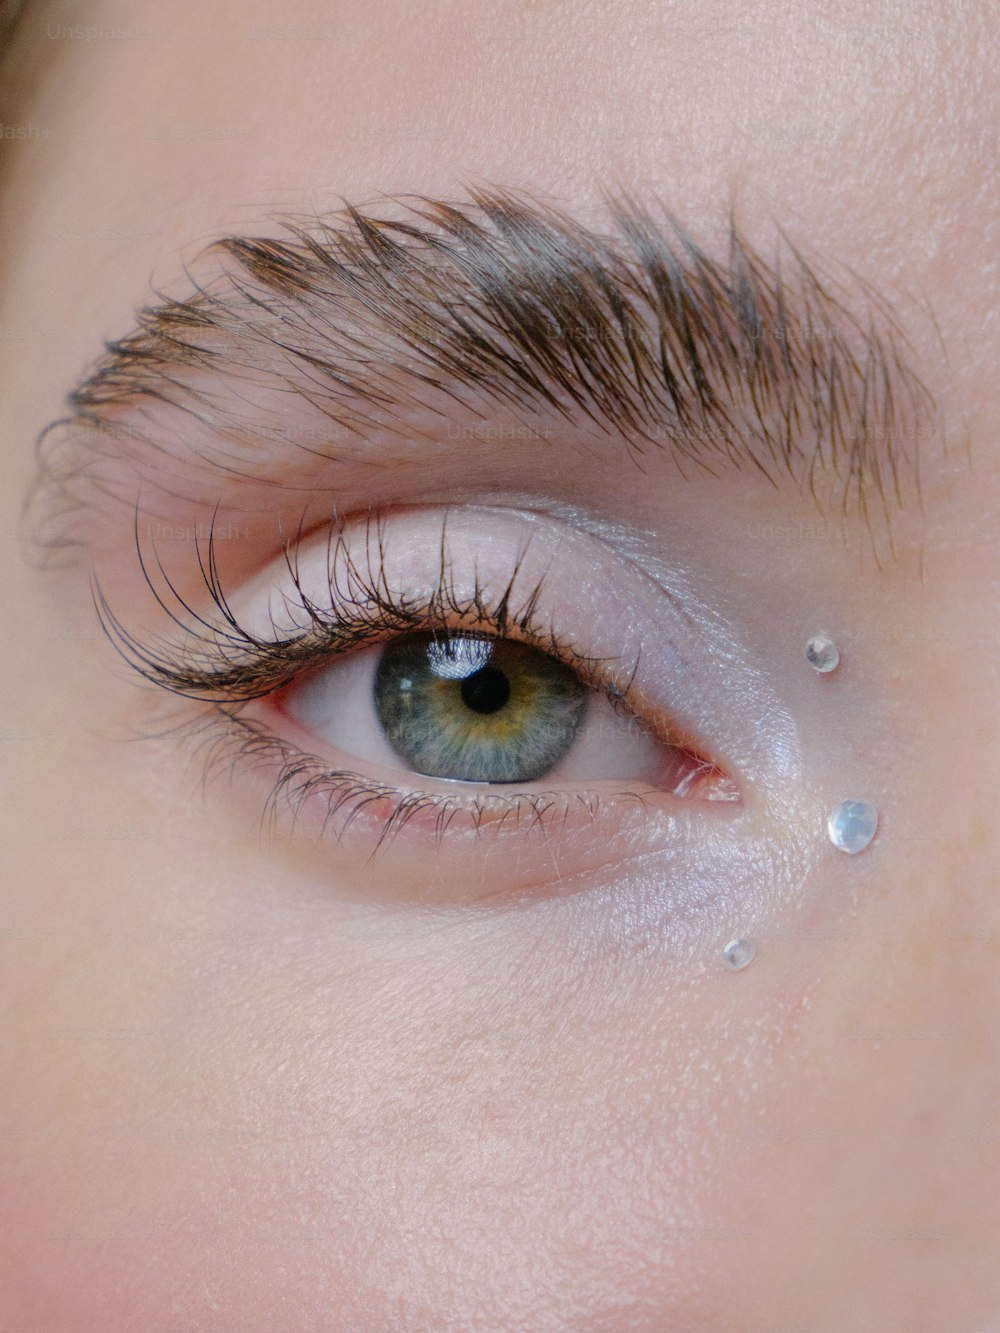 um close up do olho de uma pessoa com gotas de água sobre ele